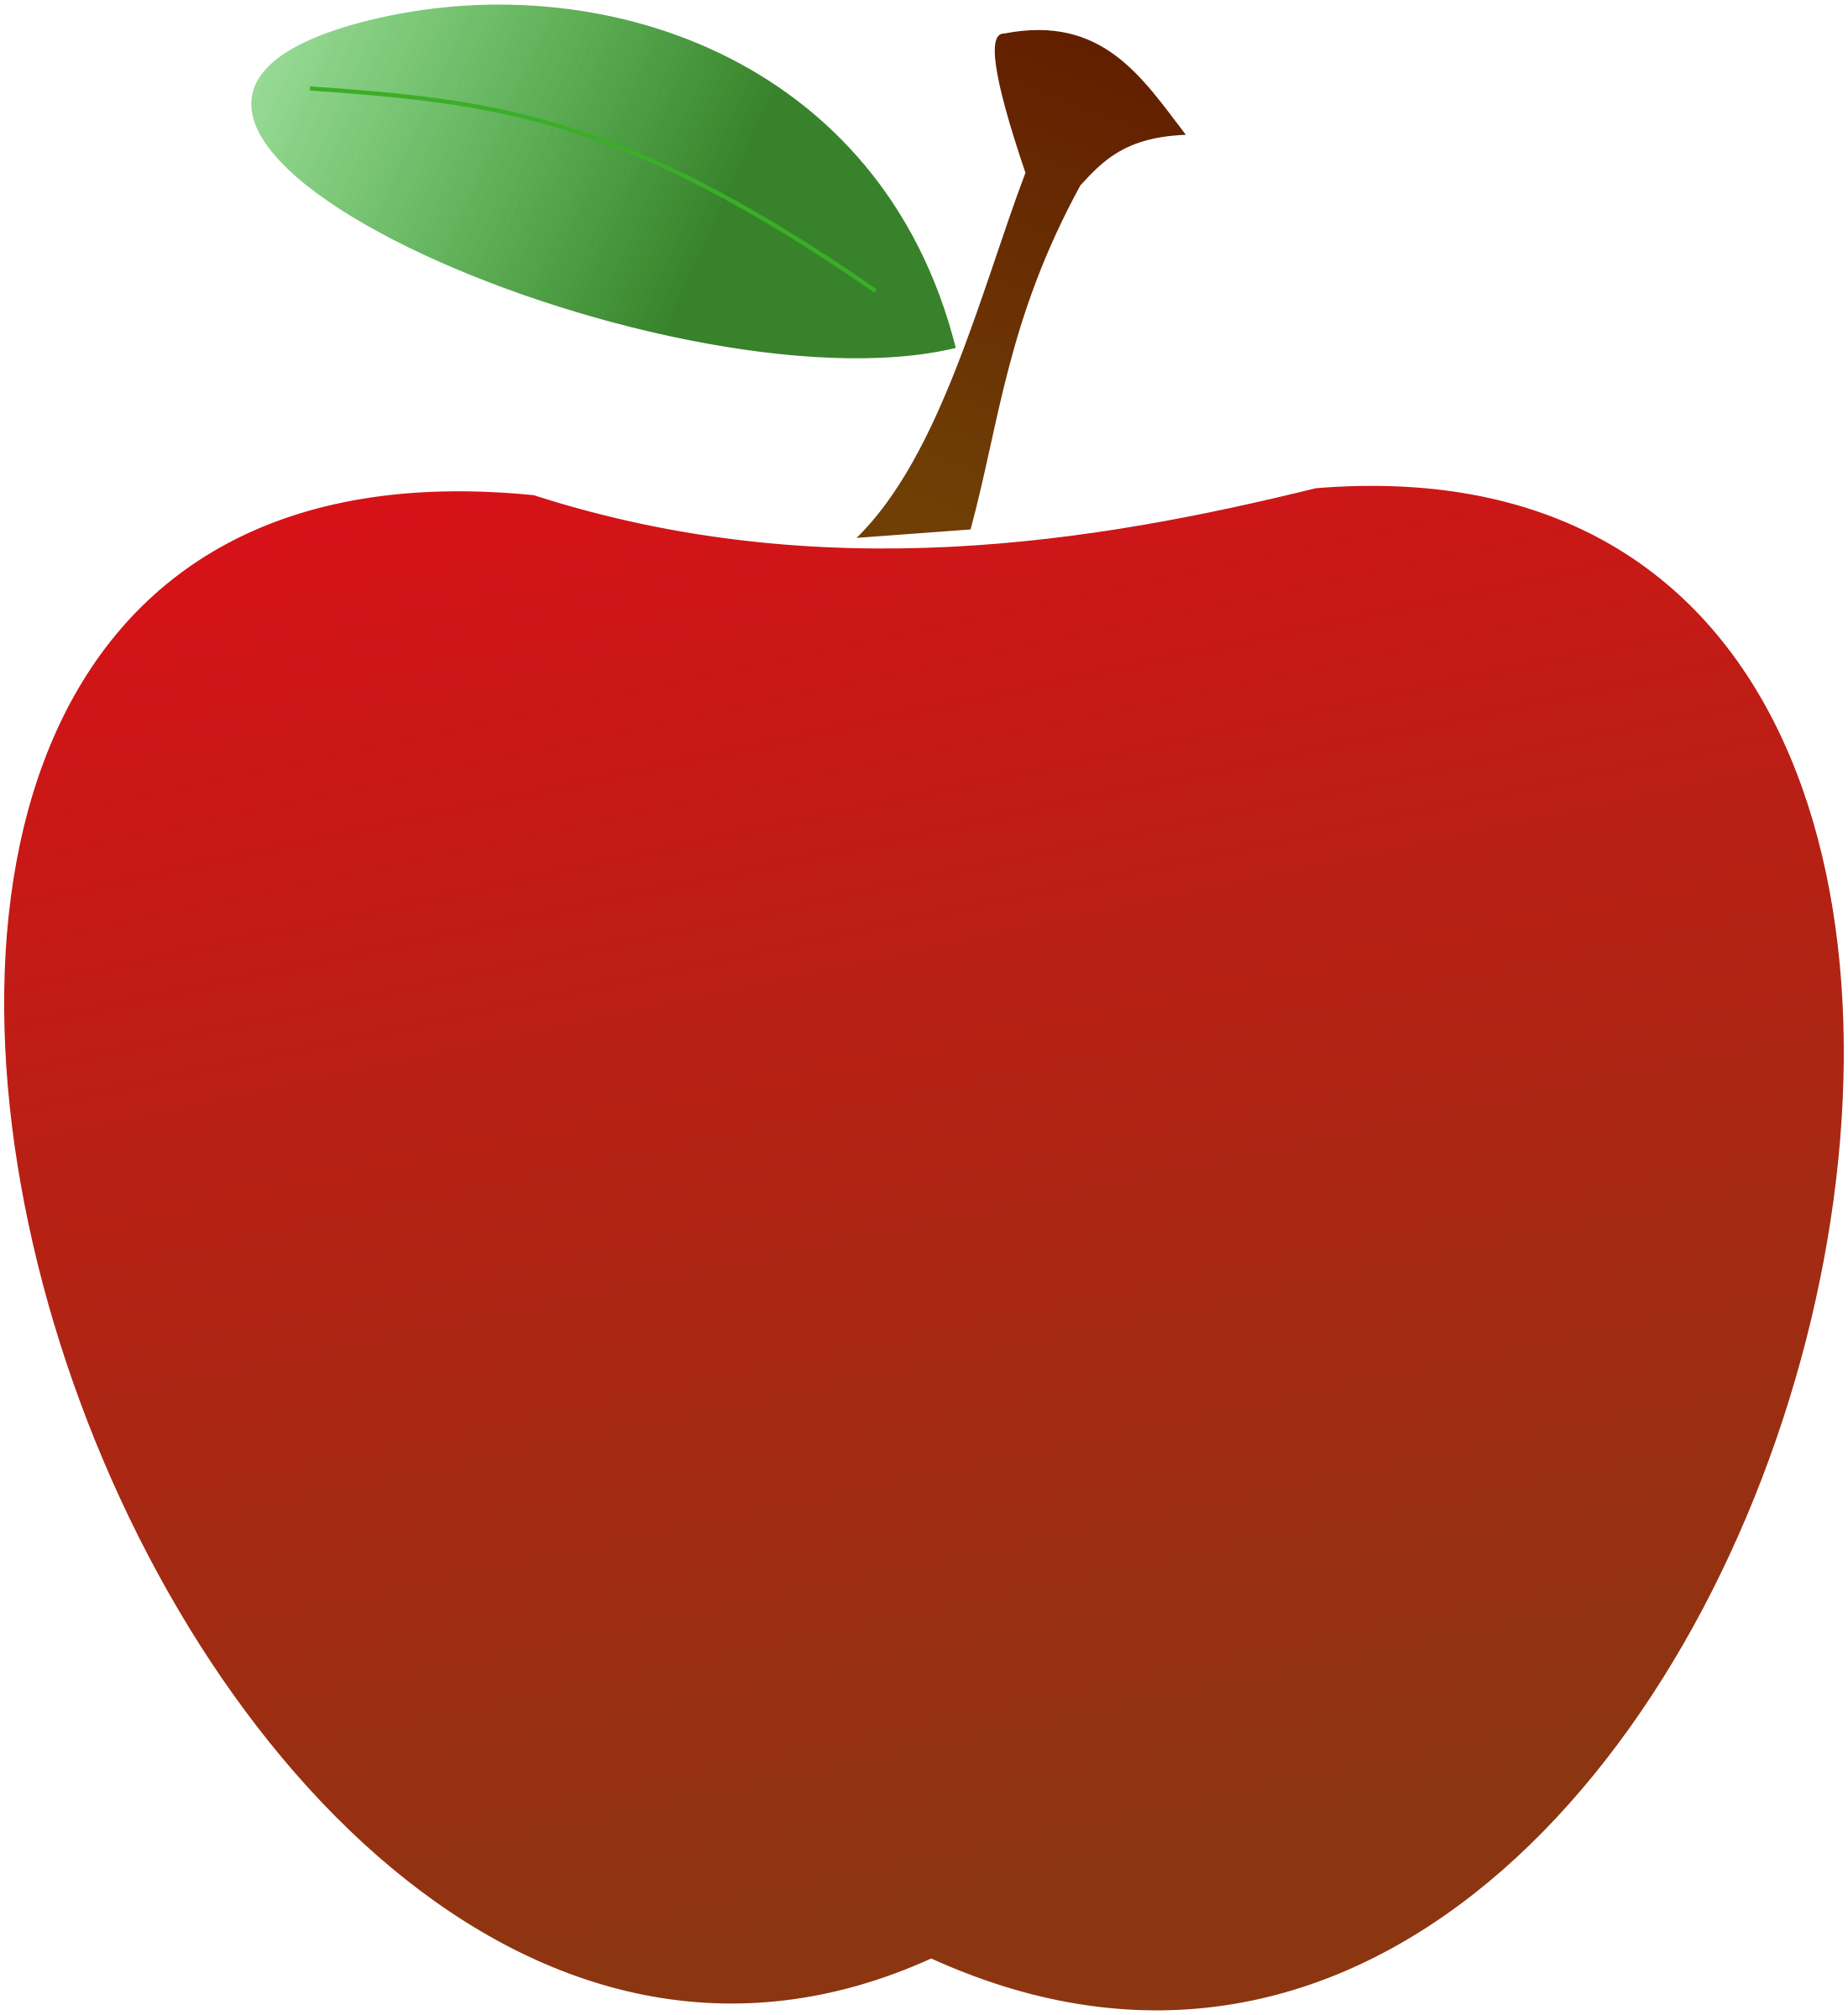 teacher apple clipart - Teacher Apple Clipart